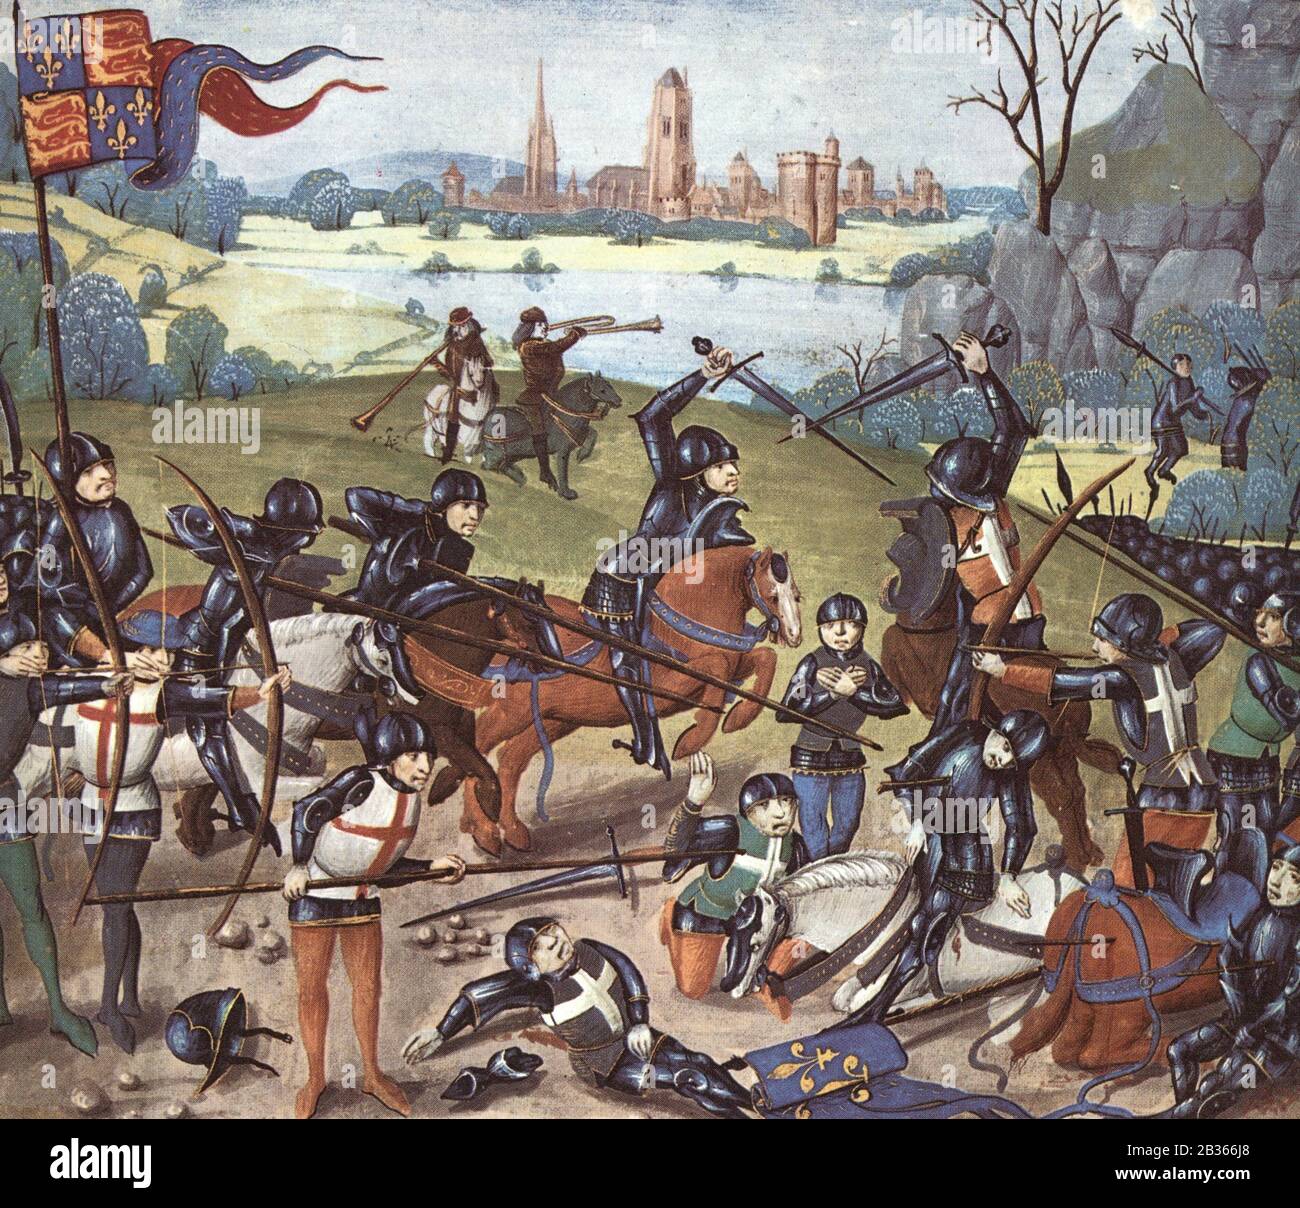 La bataille d'Agincourt, 1415. D'une miniature du XVe siècle. La victoire retentissante d'Henry v a établi sa réputation pour sa vie et pour la postérité. Banque D'Images